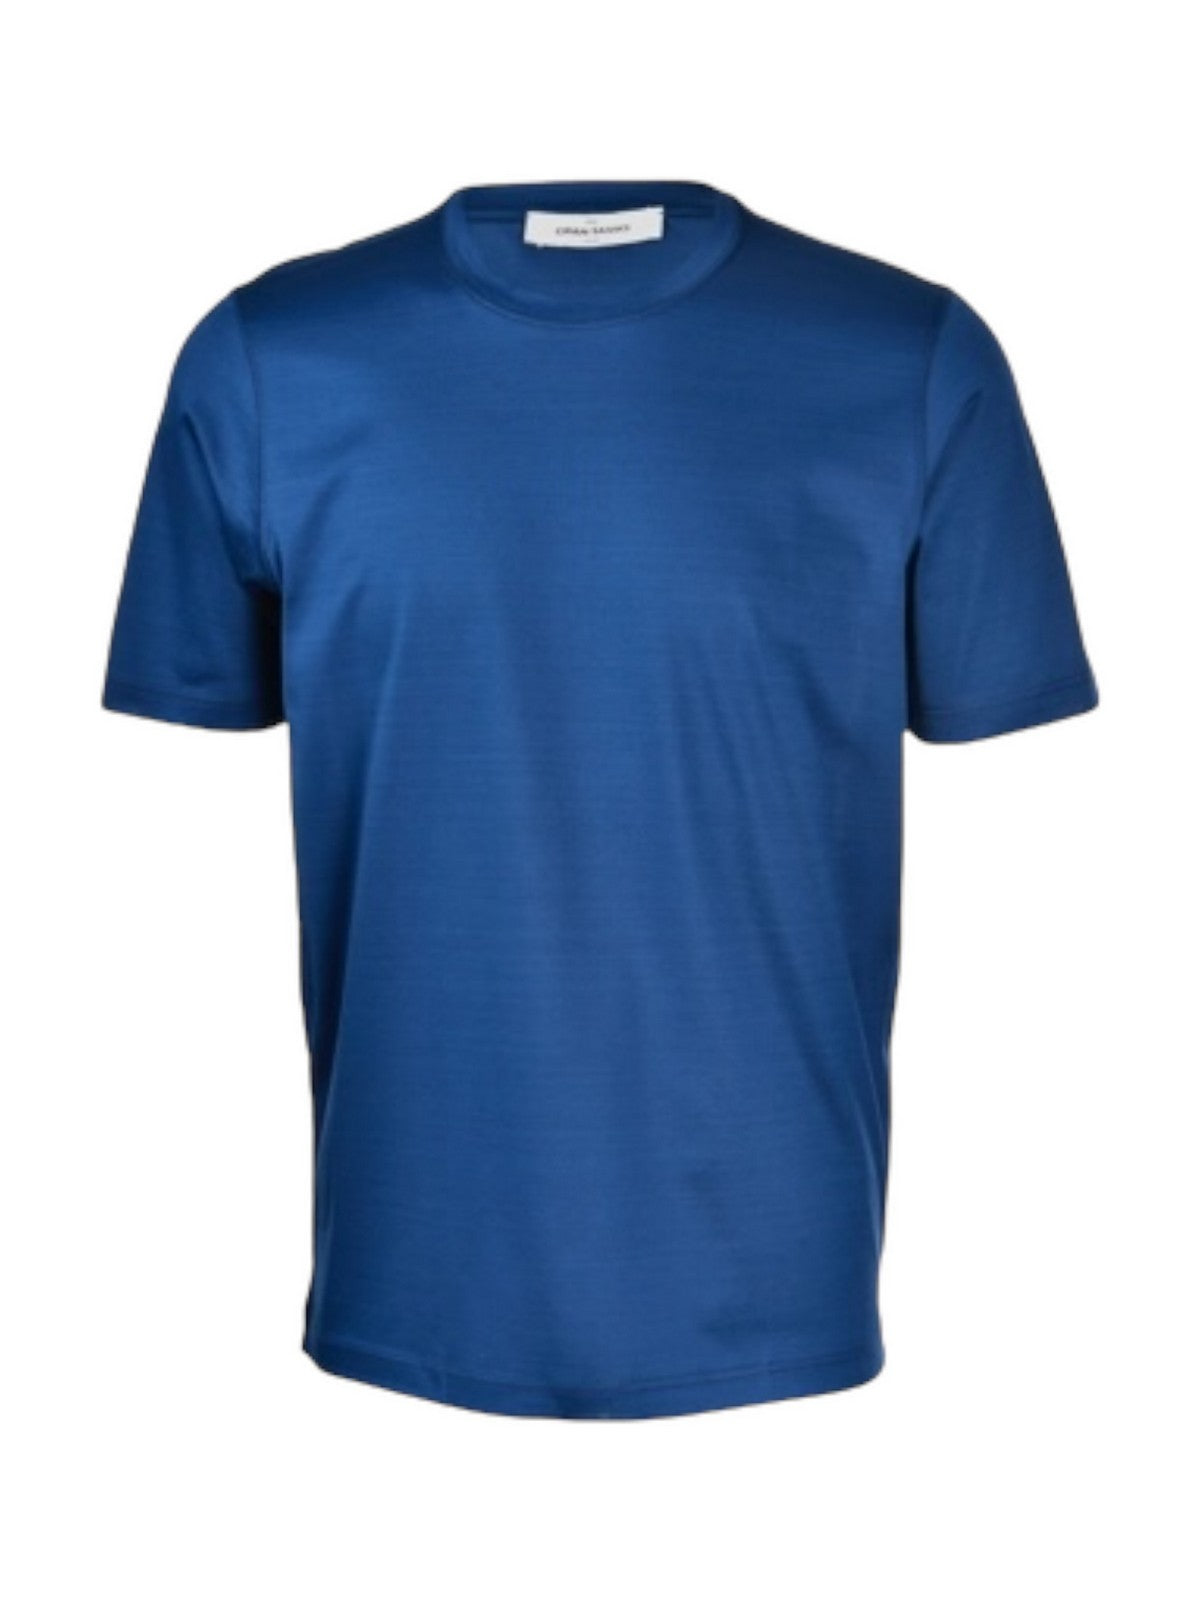 GRAN SASSO T-Shirt e Polo Uomo  60133/74002 596 Blu